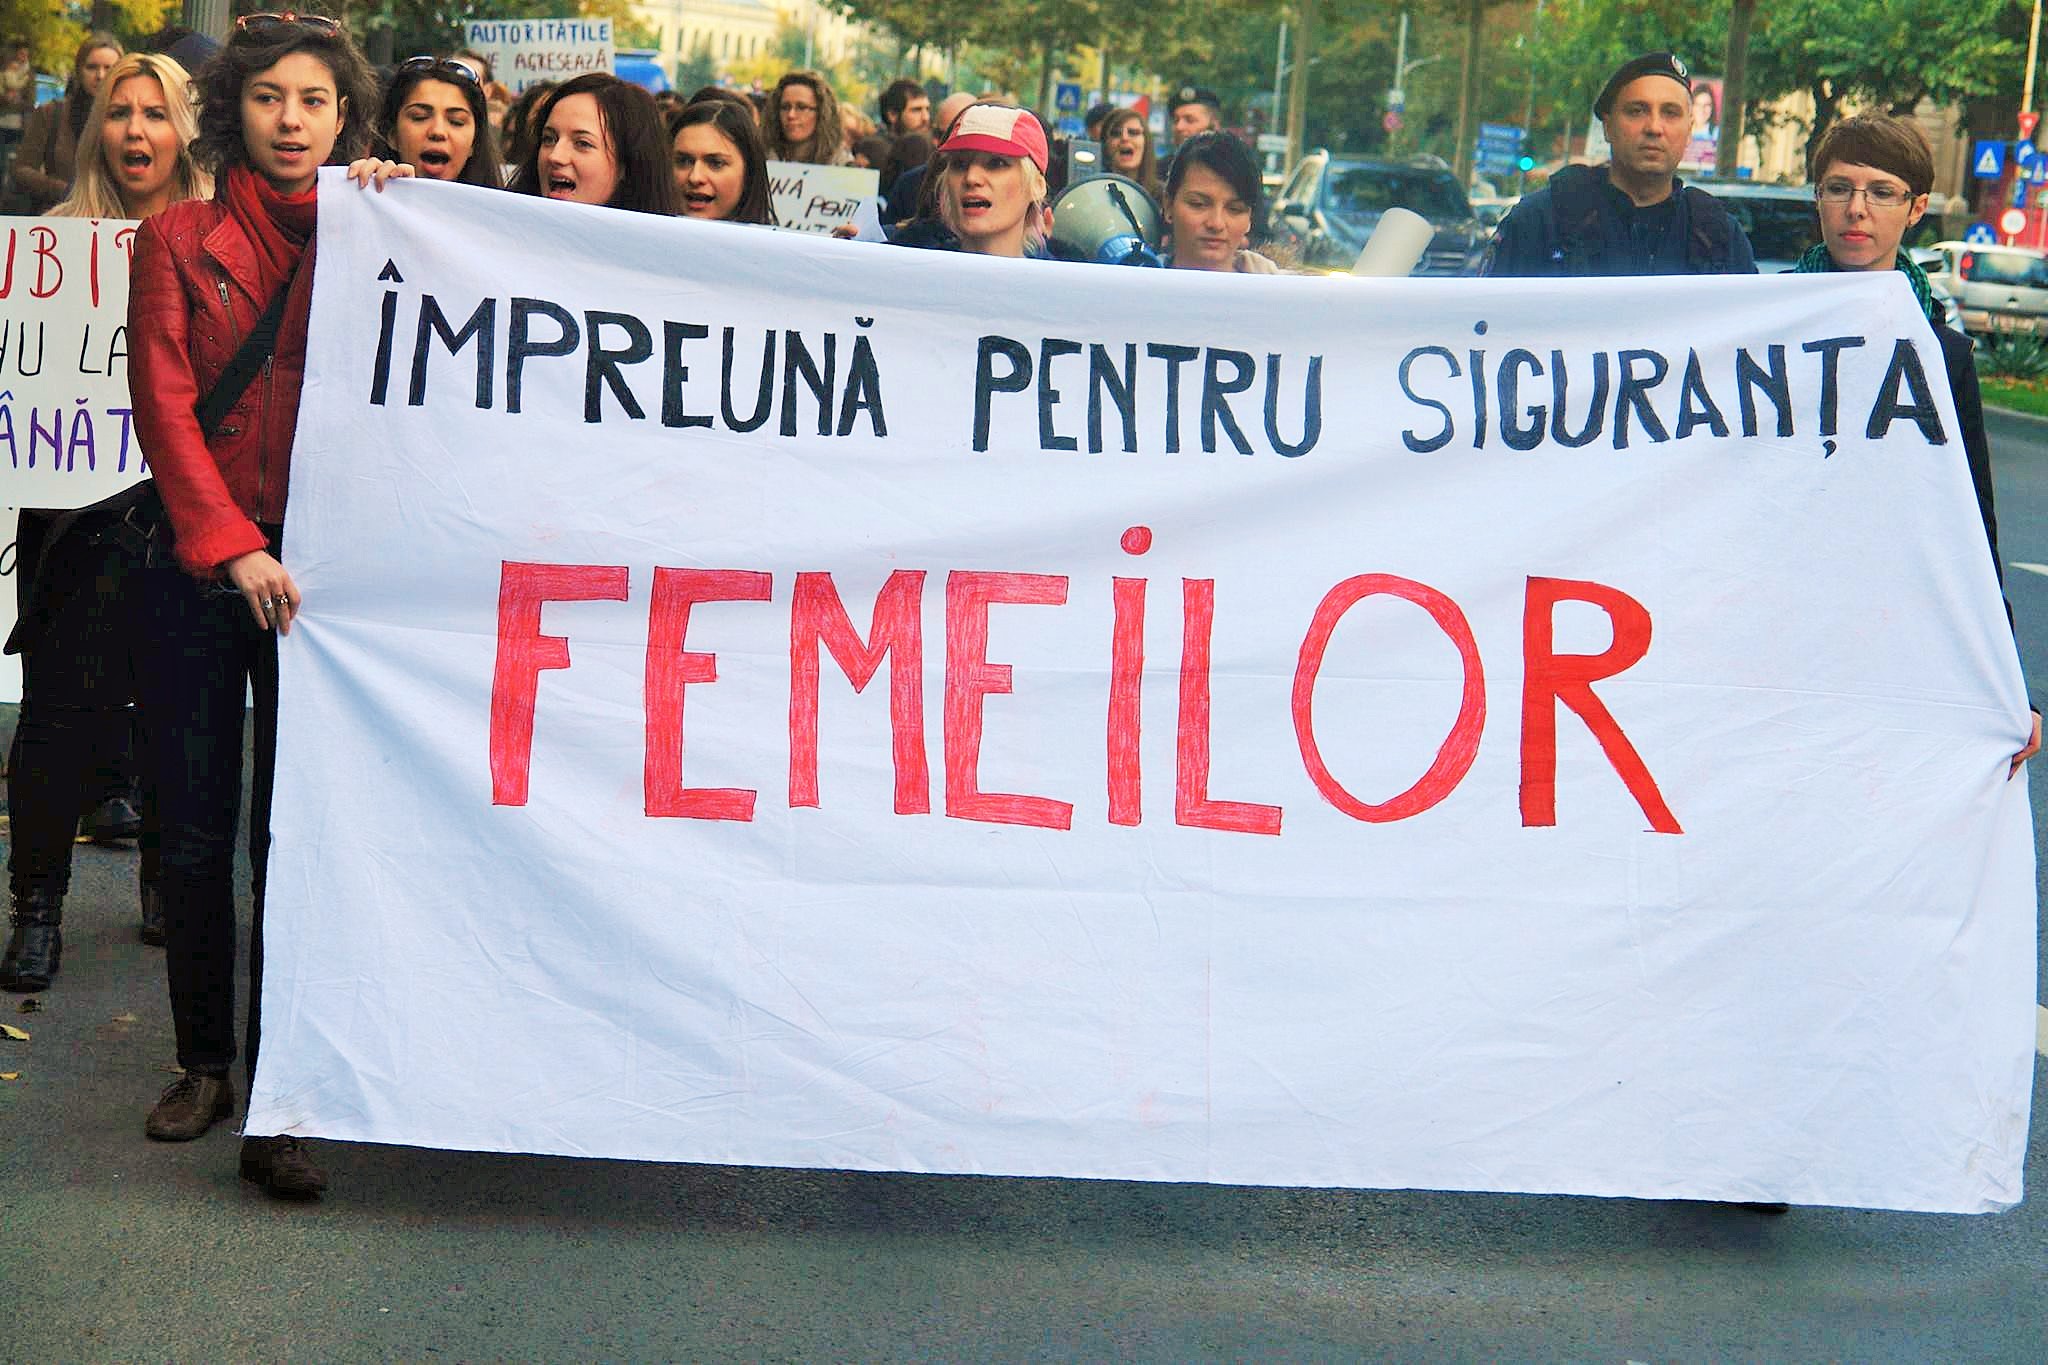 Schimbarea începe cu fiecare dintre noi! Împreună pentru siguranța femeilor – Marș împotriva formelor de violență asupra femeilor